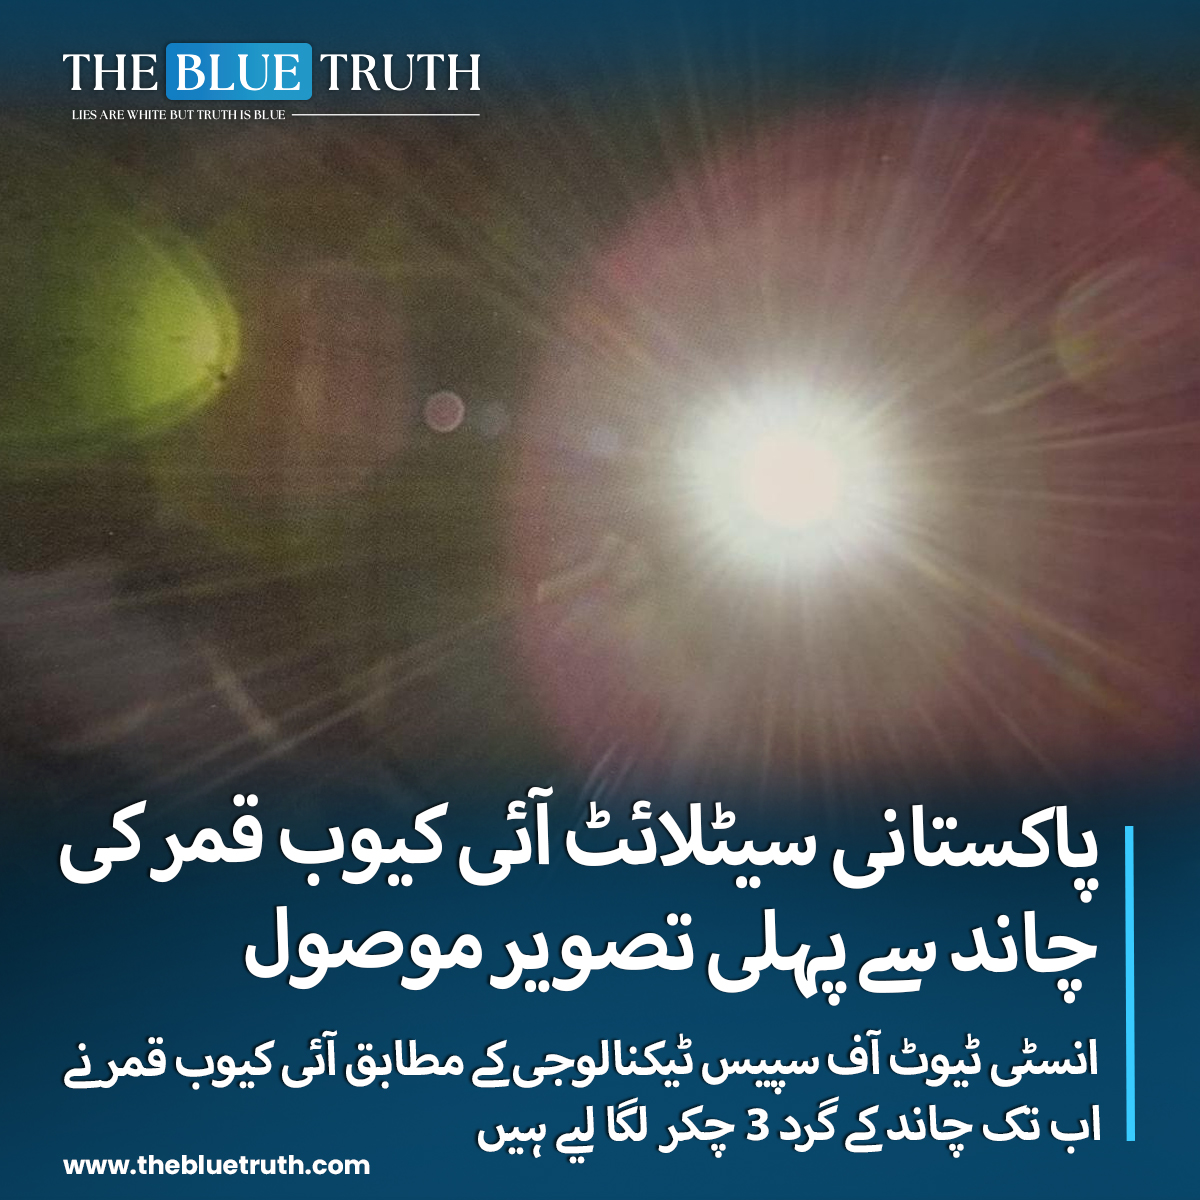 پاکستان کے پہلے سیٹلائٹ مشن 'آئی کیوب قمر' کامیابی سے چاند کے مدار میں داخل ہوگیا جس کی پہلی تصویر سامنے آگئی، انسٹی ٹیوٹ آف سپیس ٹیکنالوجی کے مطابق آئی کیوب قمر نے چاند کے گرد 3 چکر لگا لیے ہیں، مشن 3 سے 6 ماہ تک چاند کے مدار میں گردش کرے گا، پاکستان کا سیٹلائٹ آئی کیوب قمر 8…